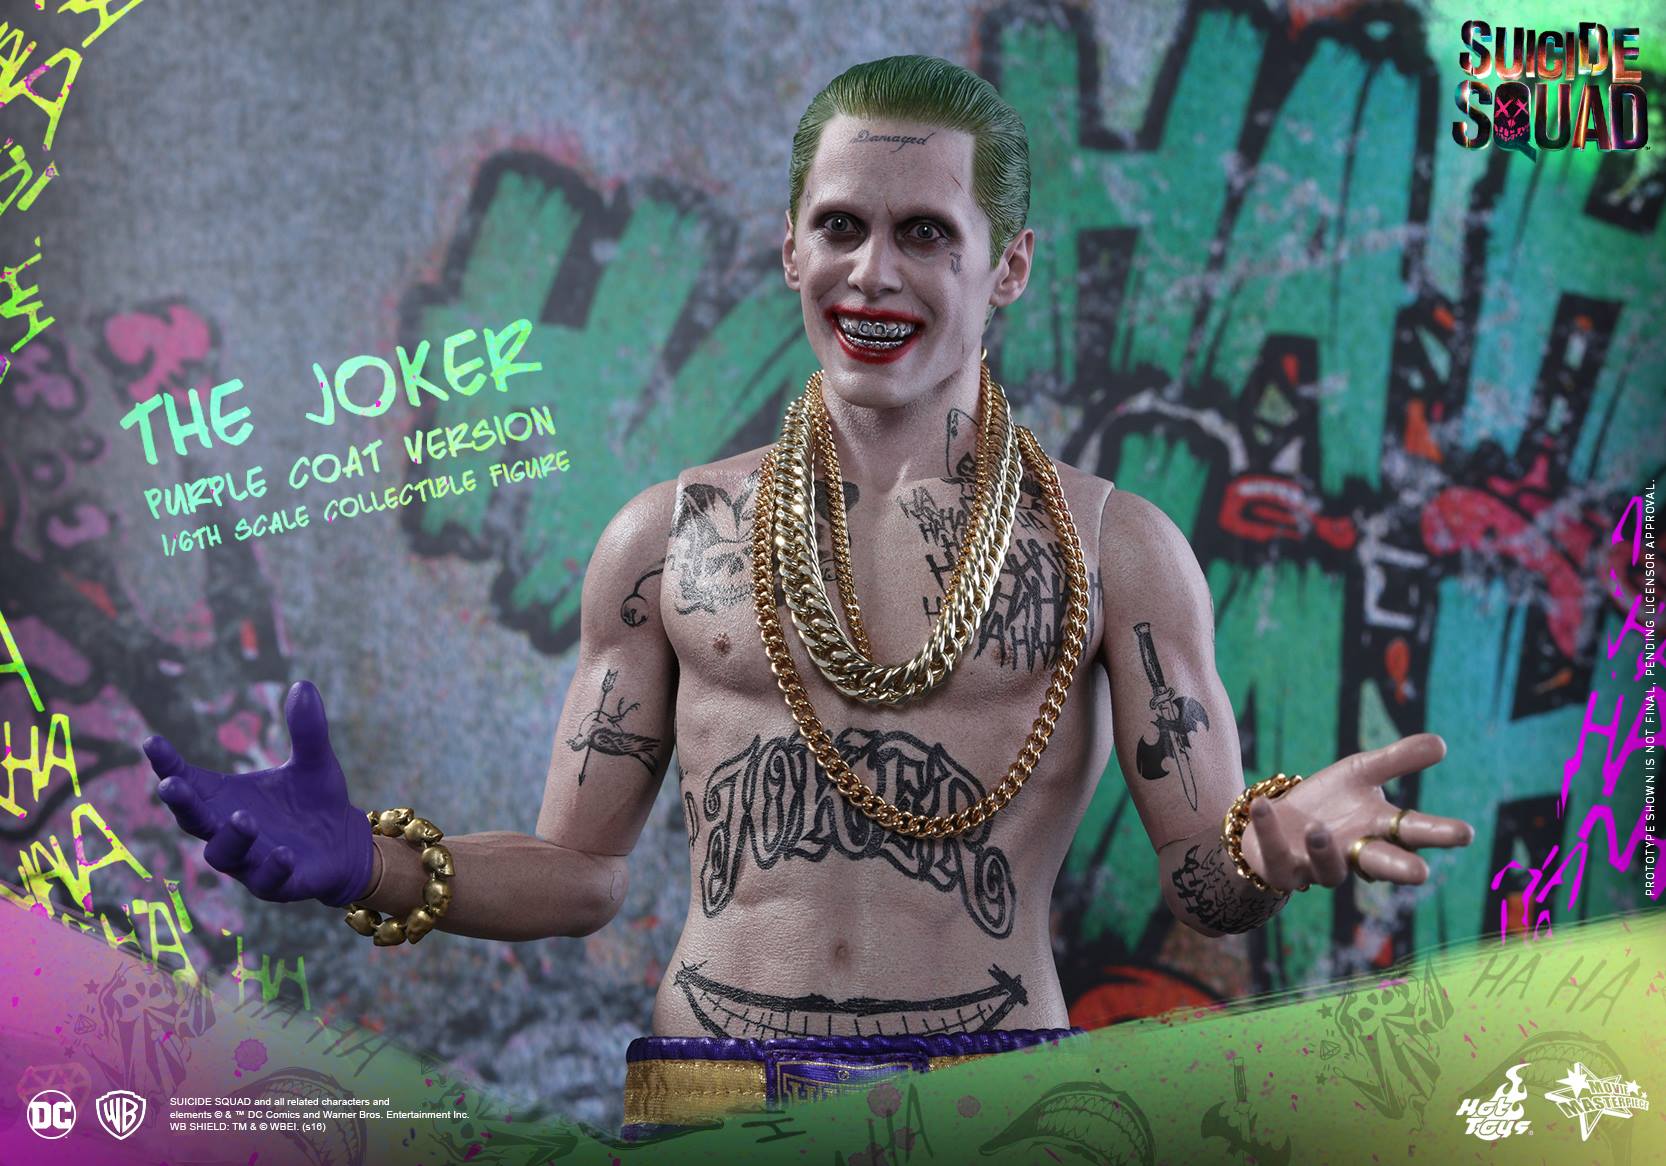 Suicide Squad Hot Toys - Joker (Purple Suit)